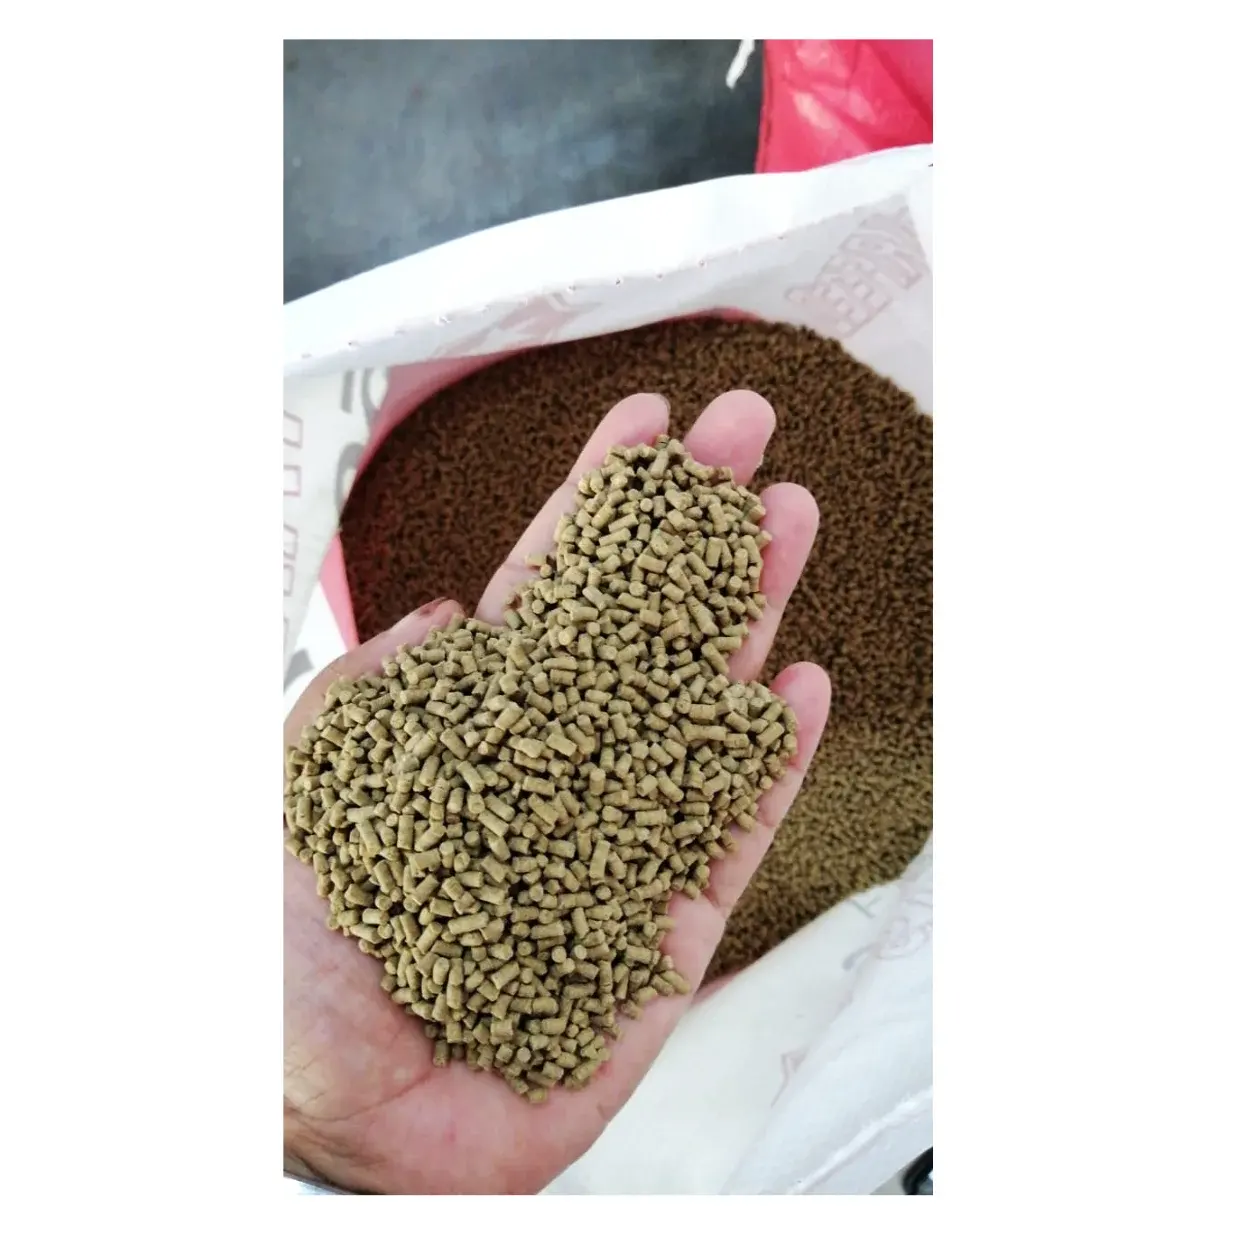 Black Tiger Shrimp Feed 5007 Harina de pescado para alimentos y peces Alimentación acuática de alta calidad